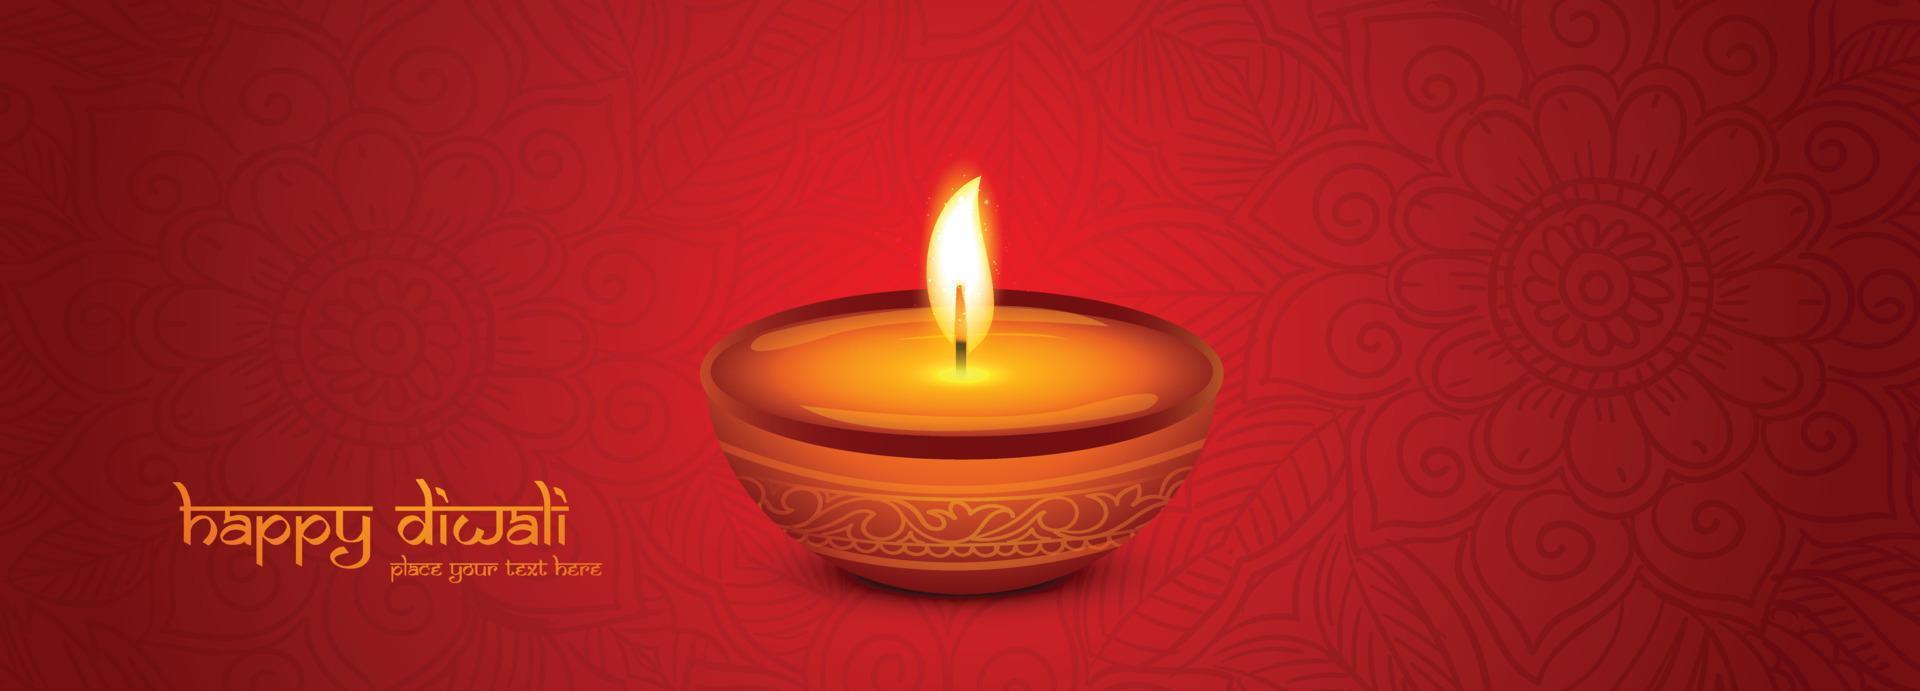 feliz diwali festival de la luz con fondo de banner de celebración de lámpara de aceite vector